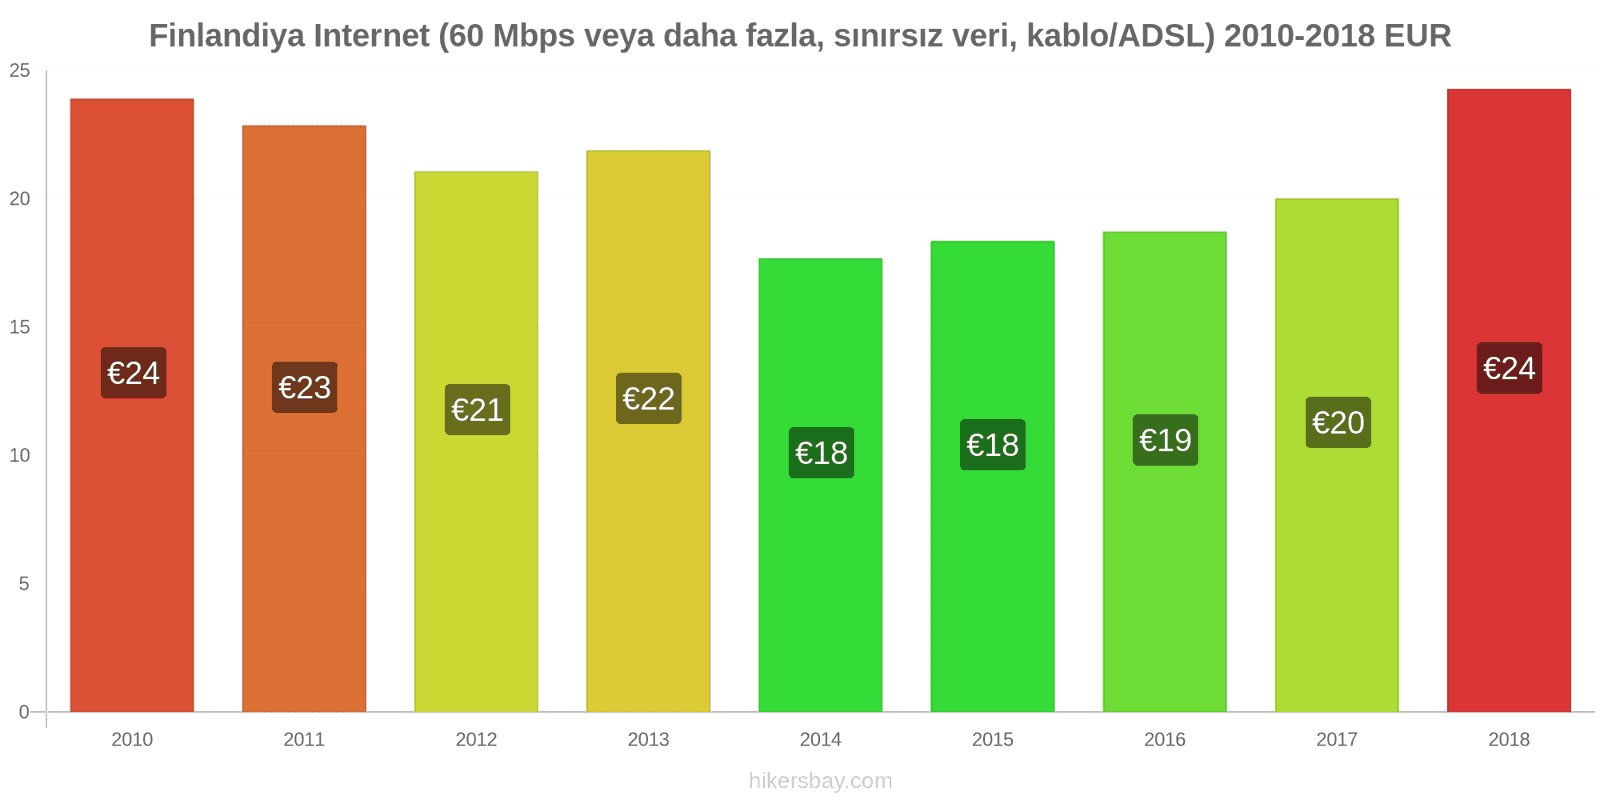 Finlandiya fiyat değişiklikleri İnternet (60 Mbps veya daha fazla, sınırsız veri, kablo/ADSL) hikersbay.com